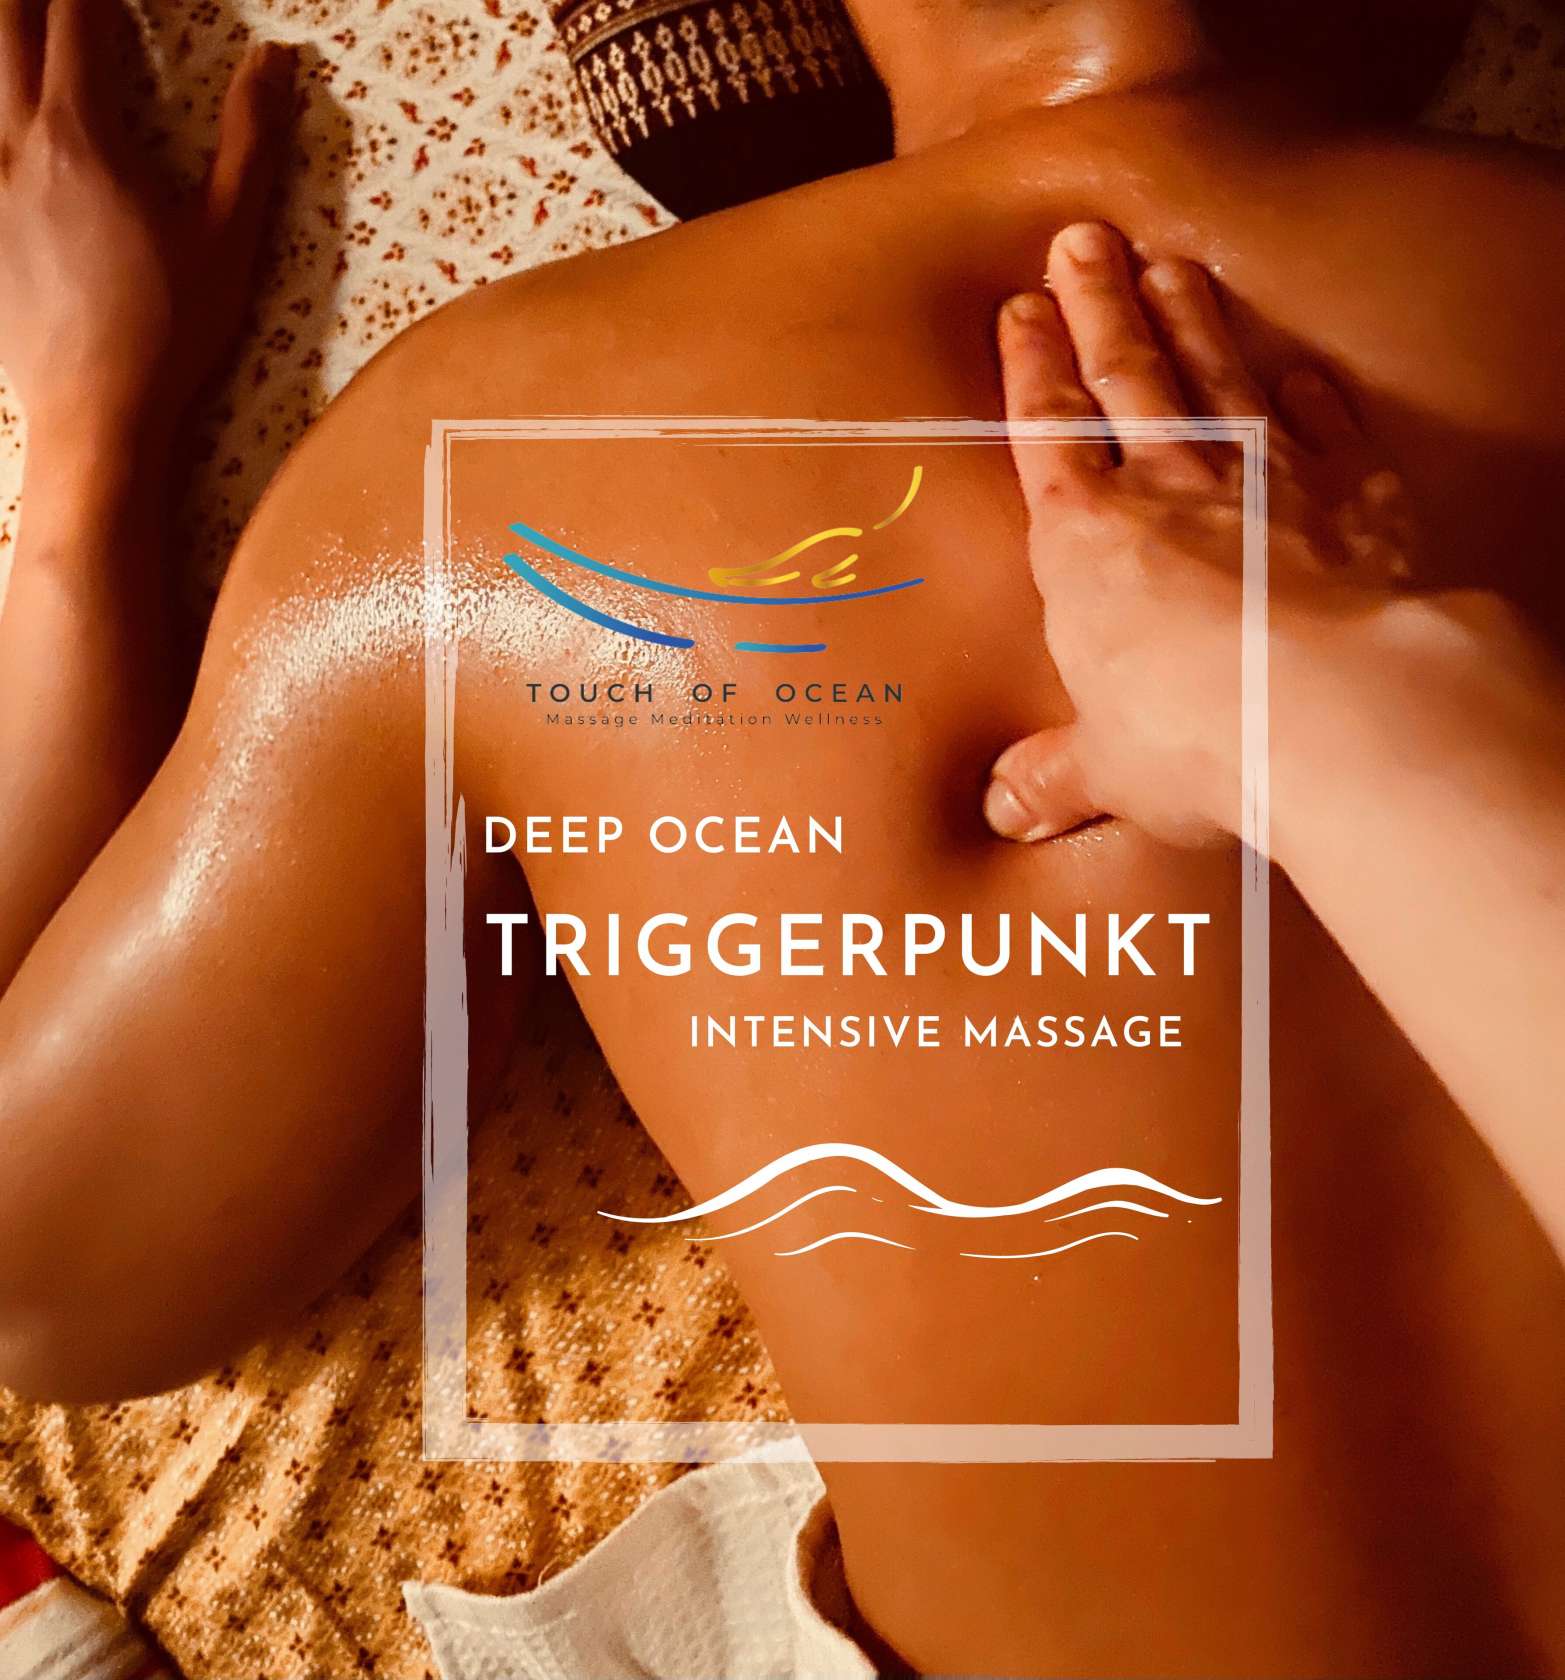 Deep Ocean Intensive-Massage & Triggerpunkt 